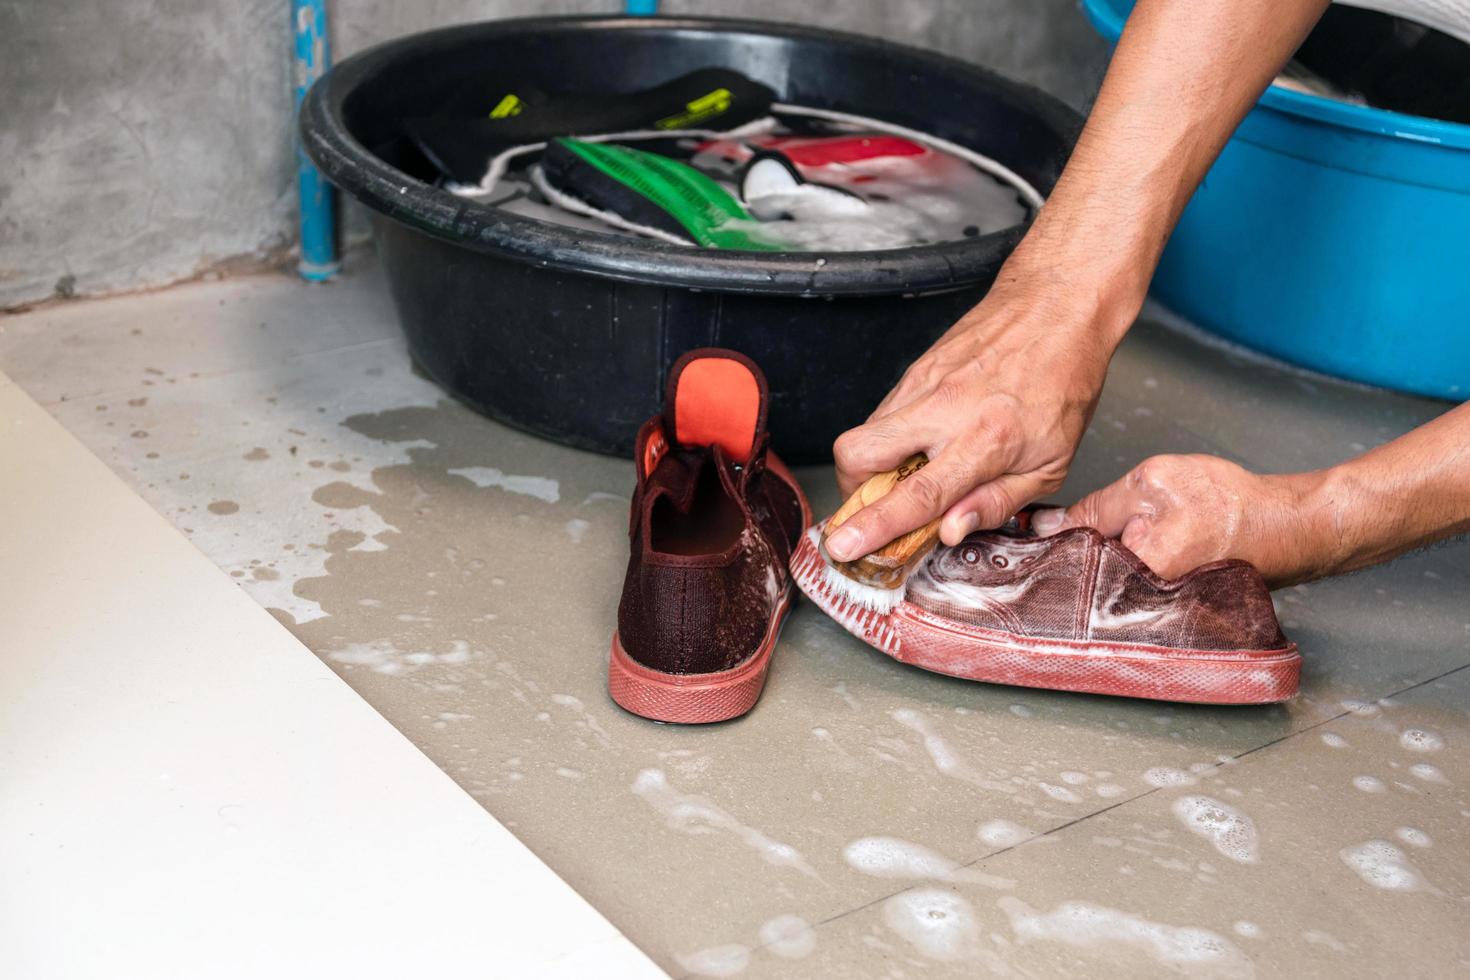 zwei Hände waschen Tennisschuhe neben mit Wasser und Schuhen gefüllten Eimern foto